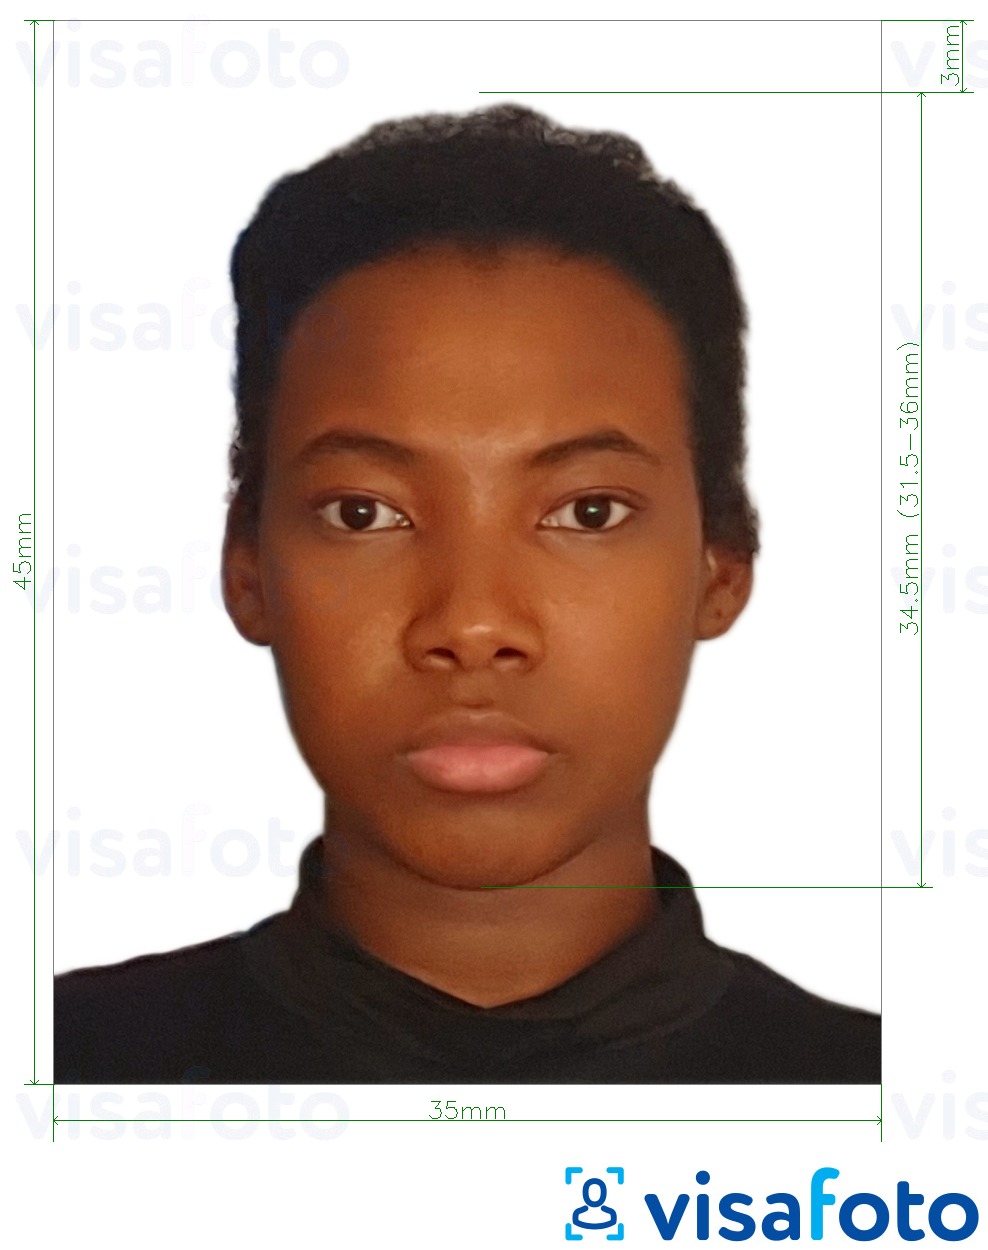 Fotobeispiel für Demokratische Republik Kongo Pass 35x45 mm (3,5x4,5 cm) mit genauer größenangabe